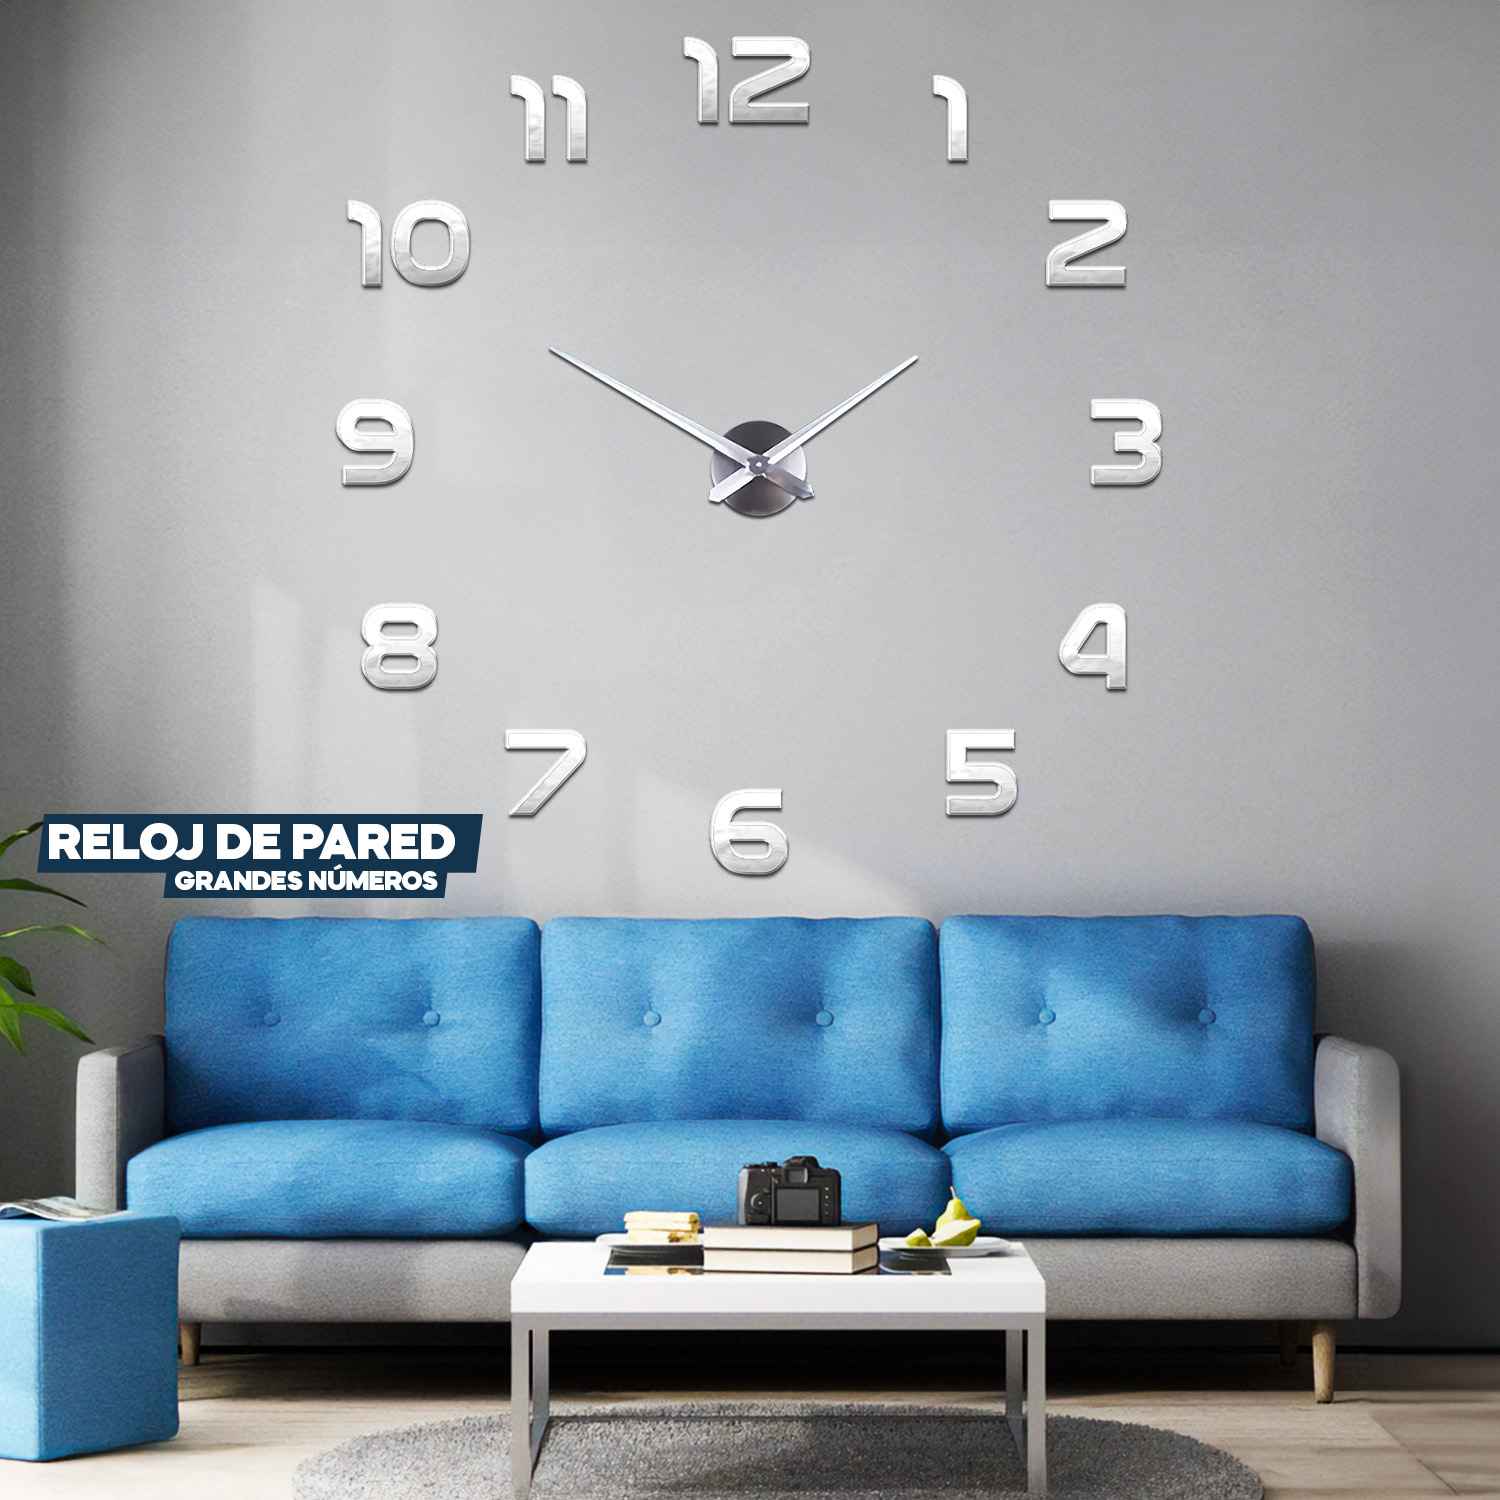 Kit de 2 Reloj de Pared Grande 3D, elegante y minimalista 100% funcional | Para Oficina, Hogar, Estudio etc. | 30 días Garantía